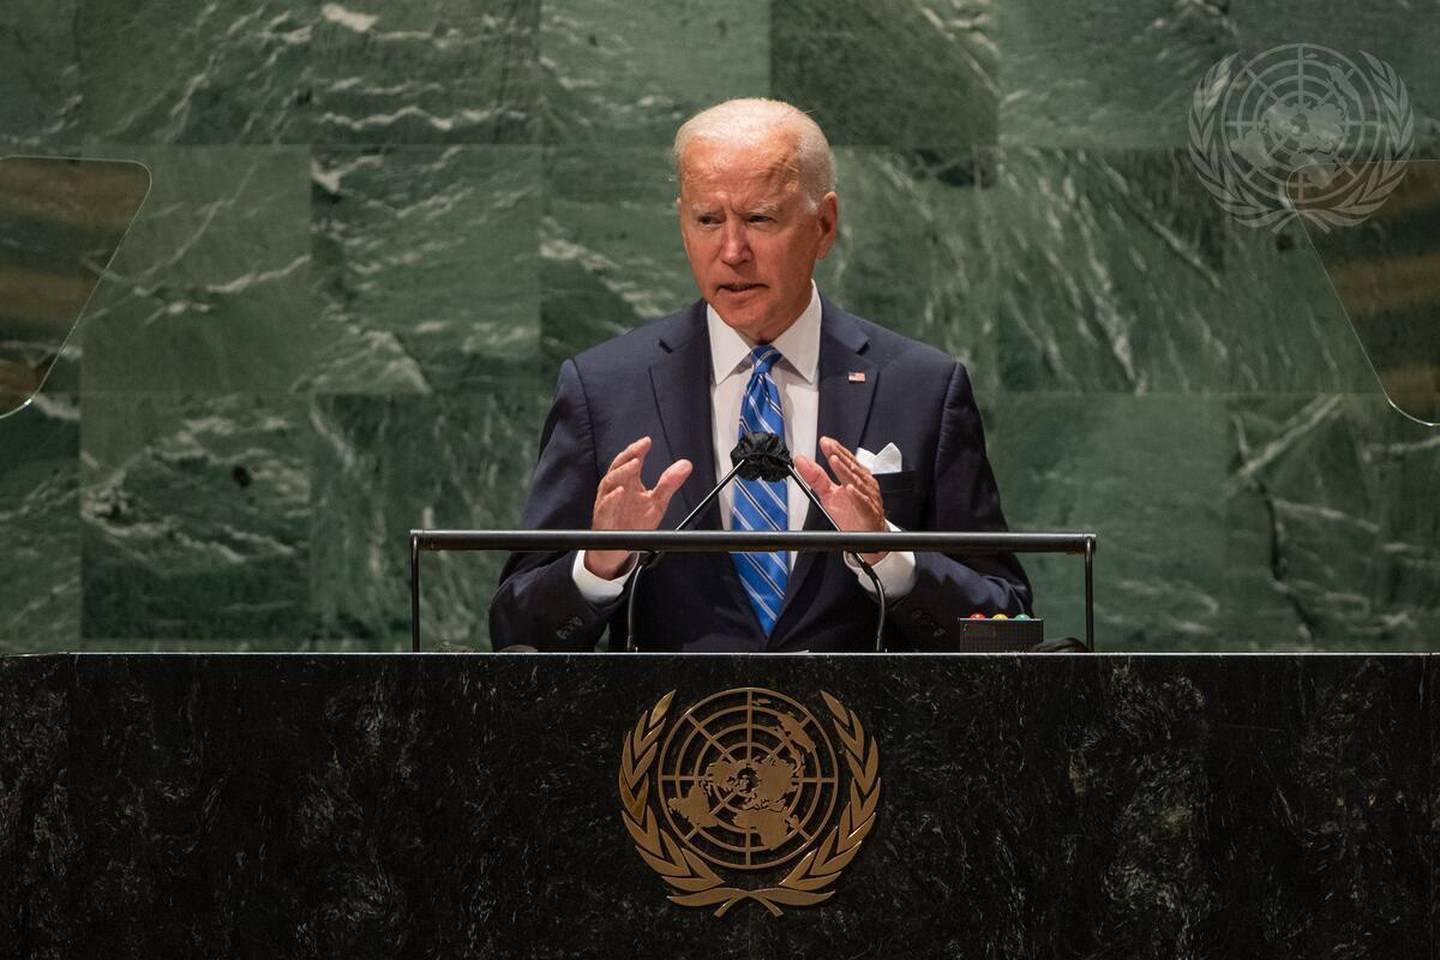 Joseph R. Biden Jr., presidente de los Estados Unidos de América, interviene en el debate general del septuagésimo sexto período de sesiones de la Asamblea General. Foto: Naciones Unidas/Cia Pakdfd